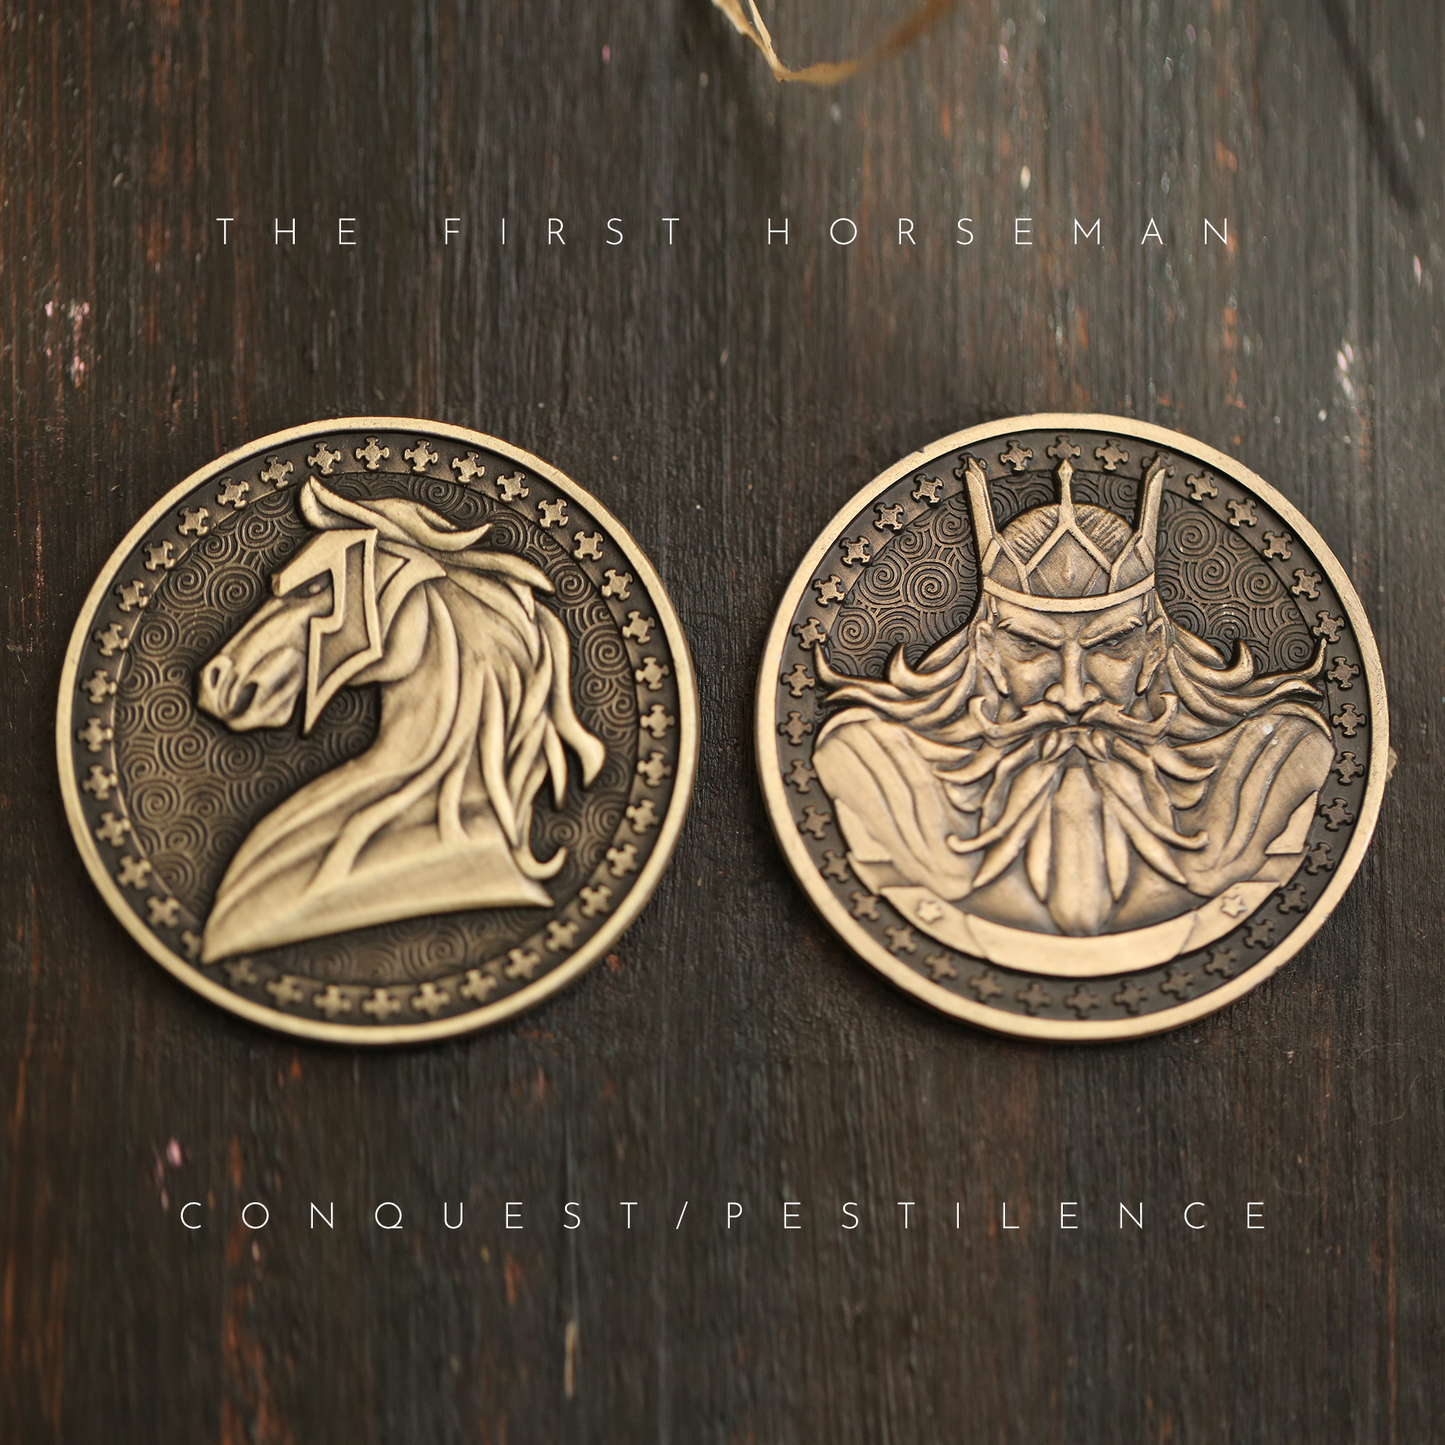 Four Horsemen of the Apocalypse Collectible Metal Coins